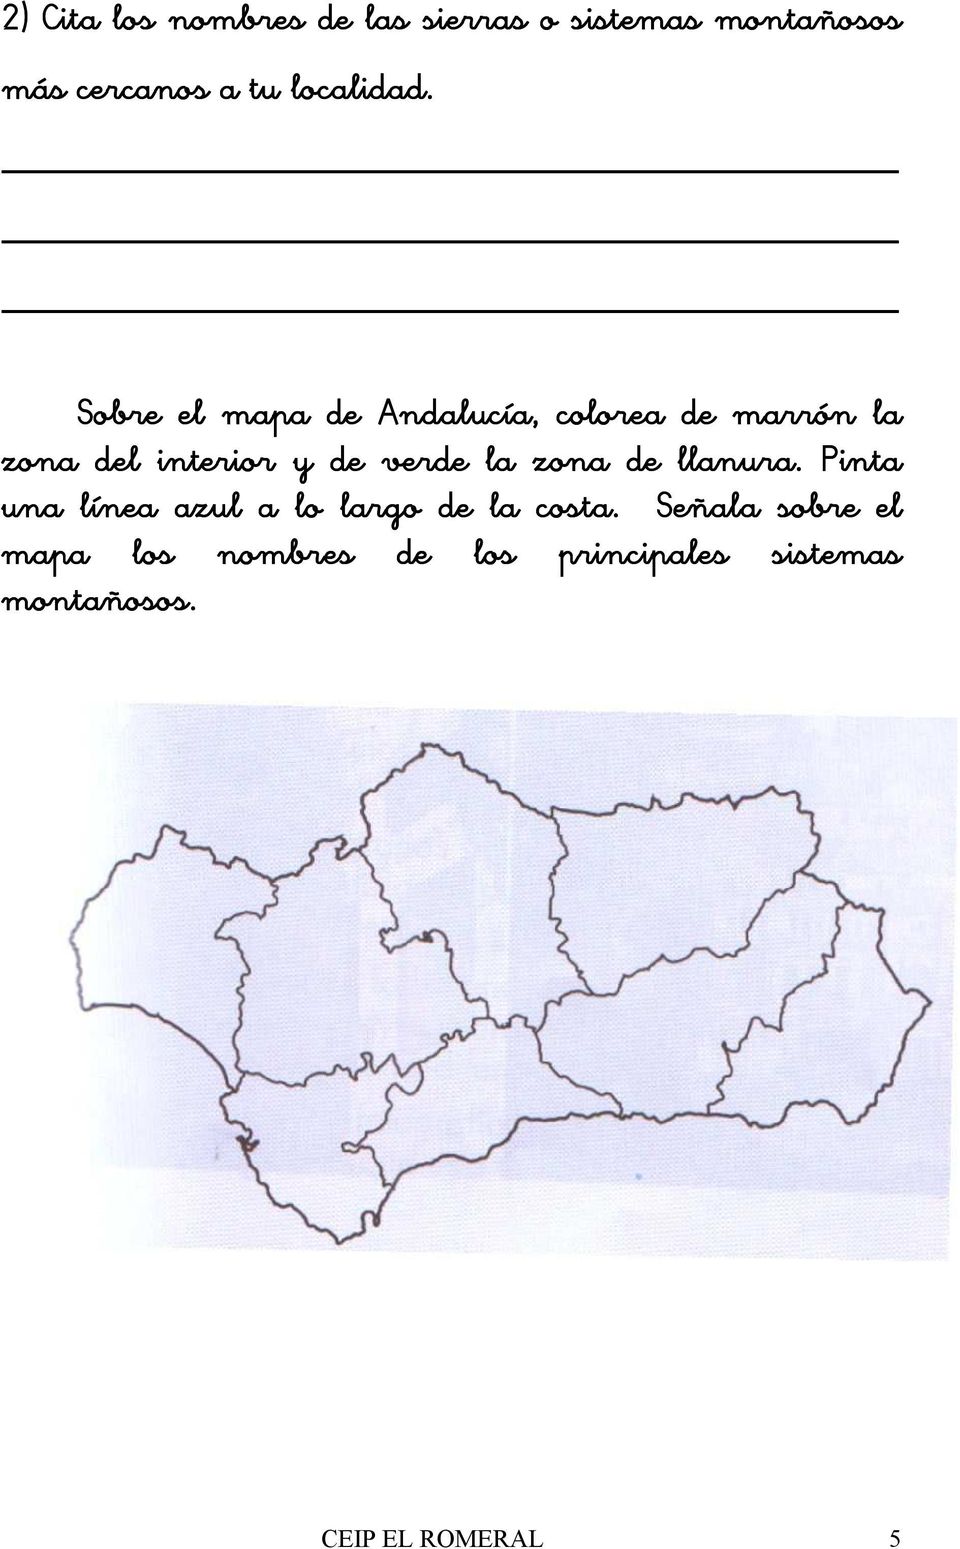 Sobre el mapa de Andalucía, colorea de marrón la zona del interior y de verde